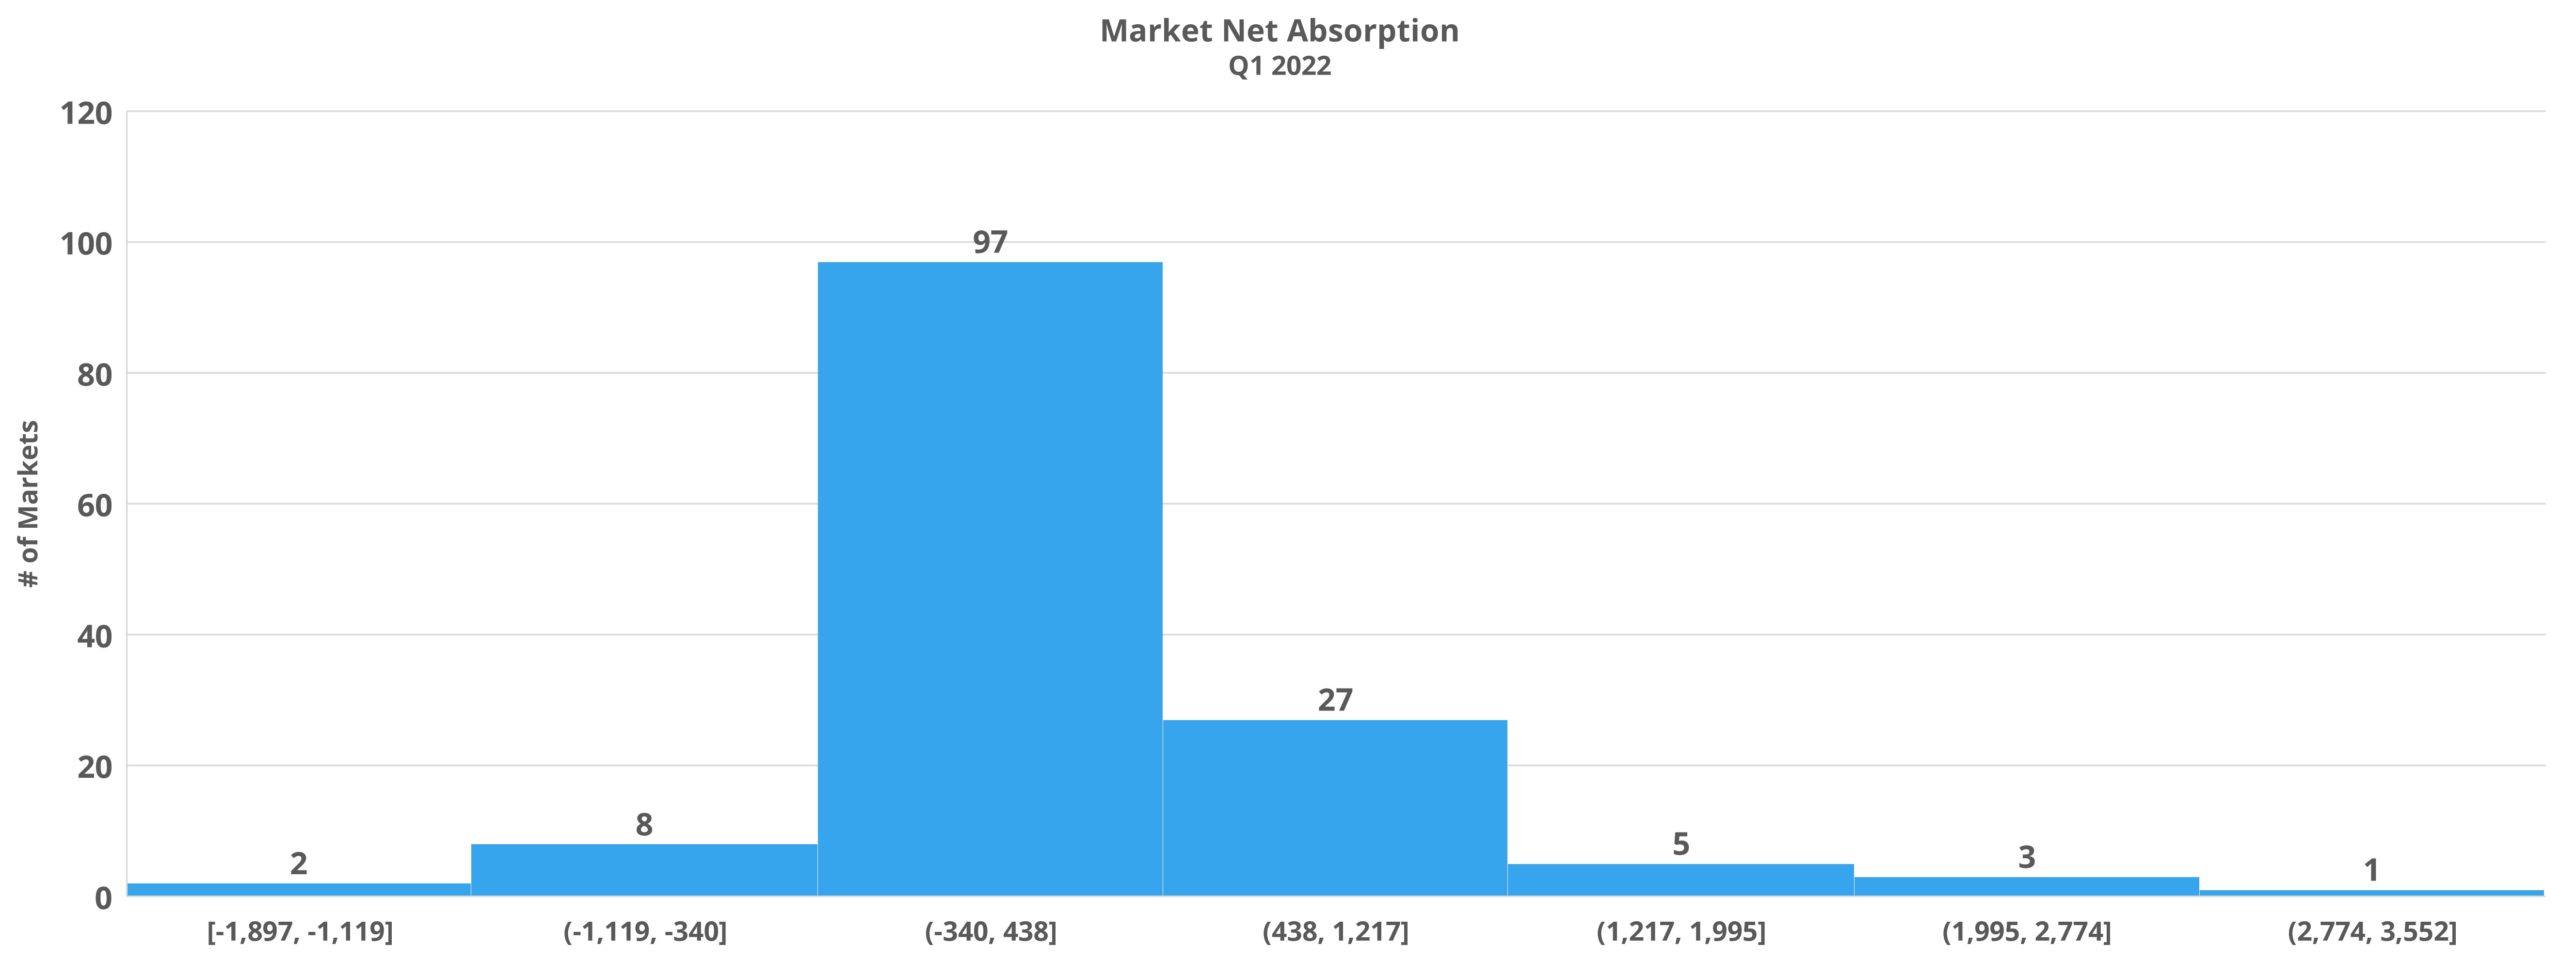 Market Net Absorption